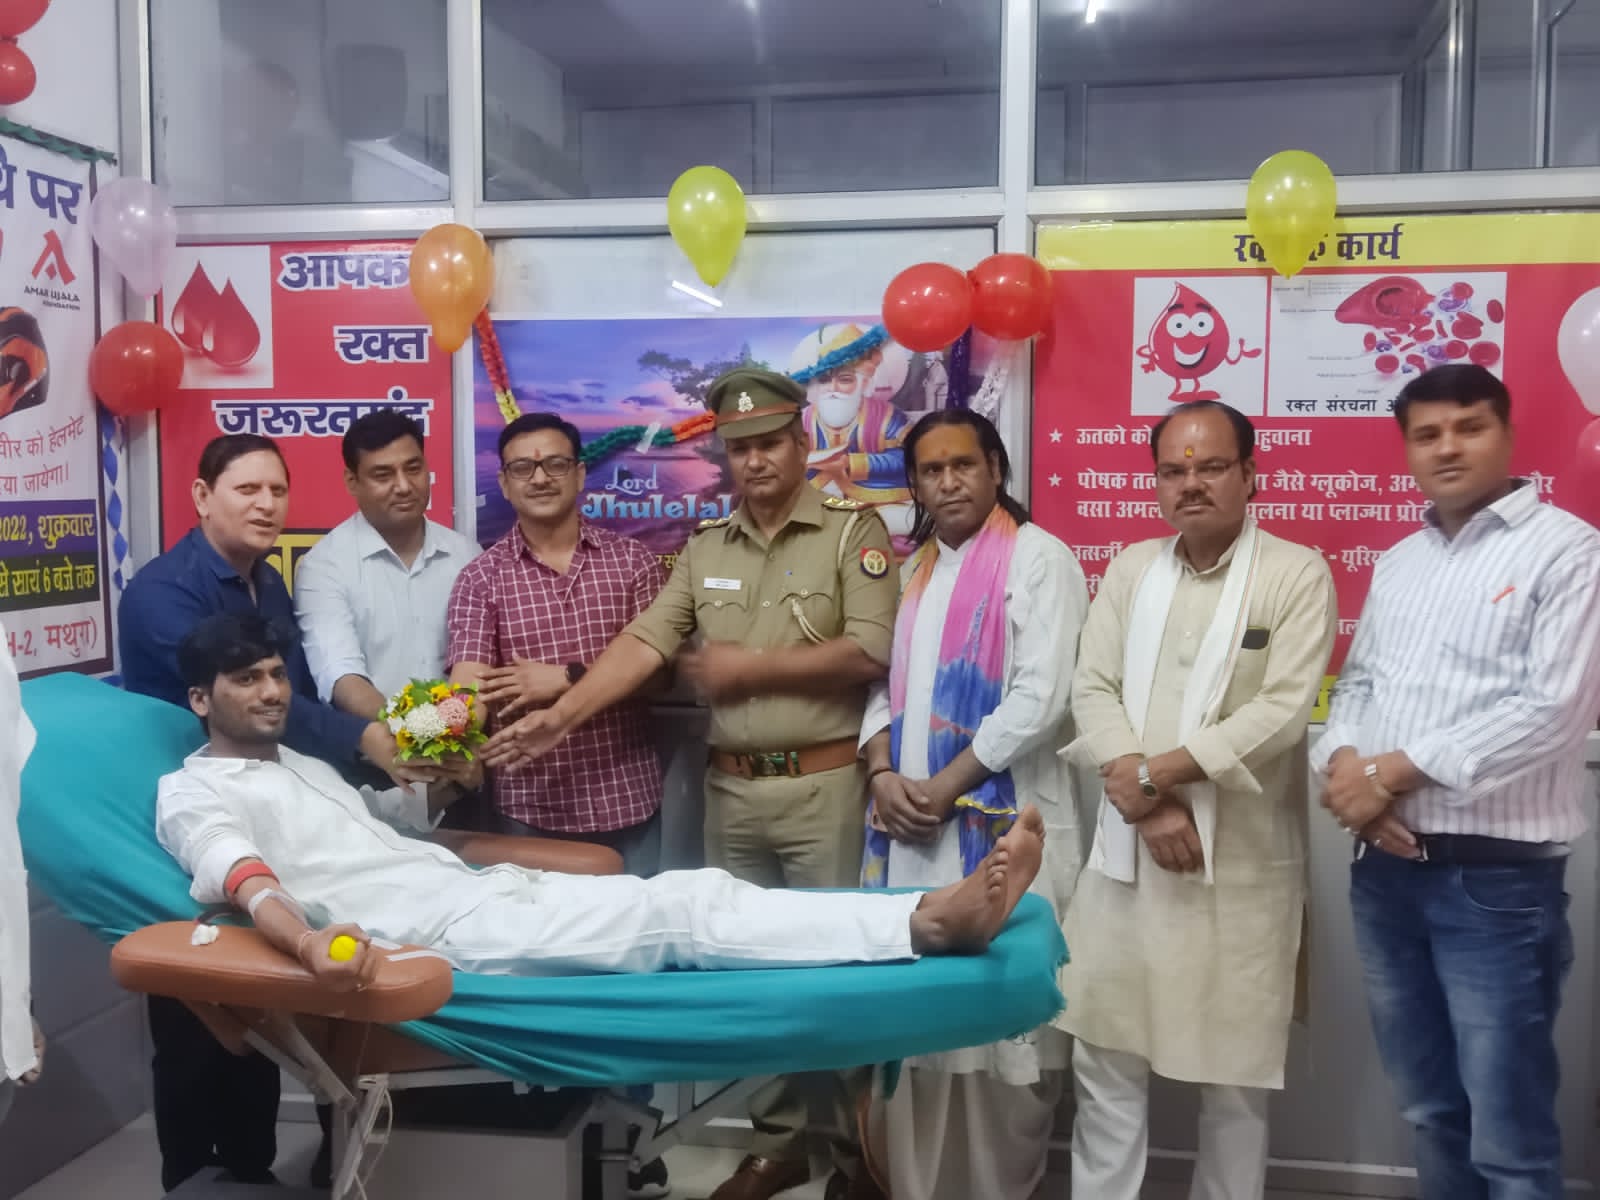 32 लोगों ने किया रक्तदान, स्वर्गीय माधुरी शर्मा की द्वितीय पुण्यतिथि पर लगा रक्तदान शिविर | New India Times